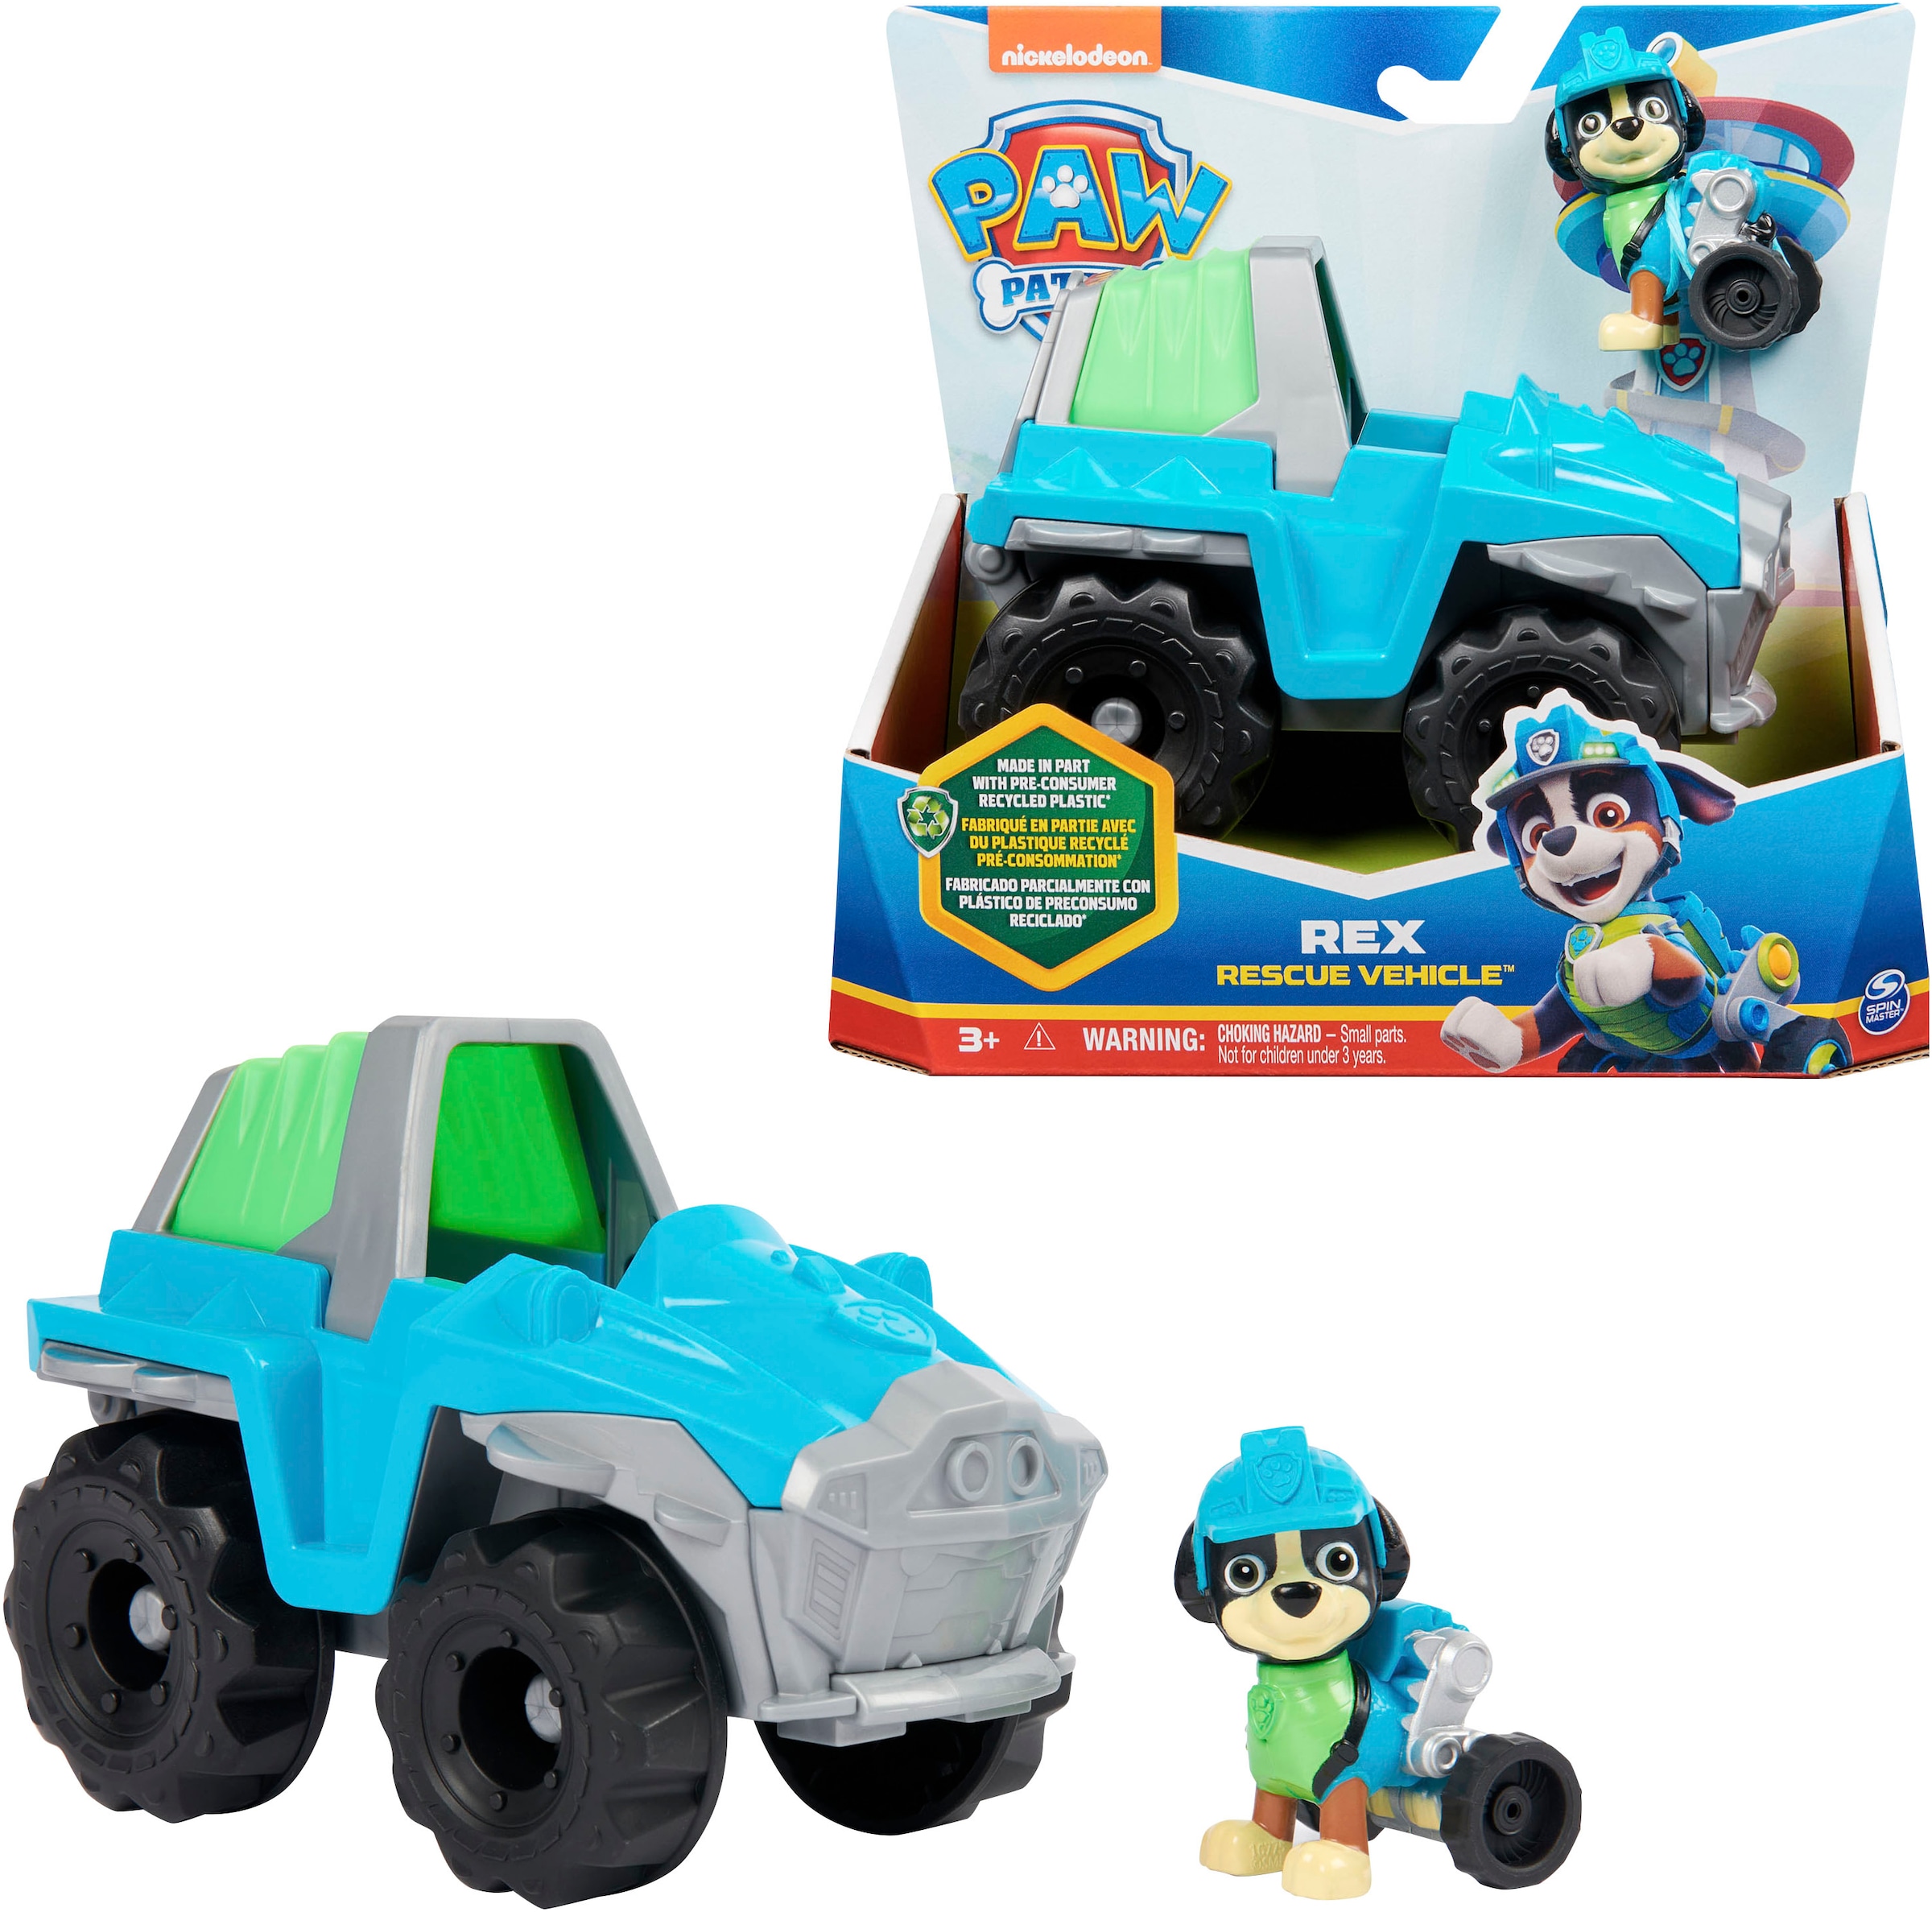 Spielzeug-Auto »Paw Patrol - Sust. Basic Vehicle Rex«, zum Teil aus recycelten Material